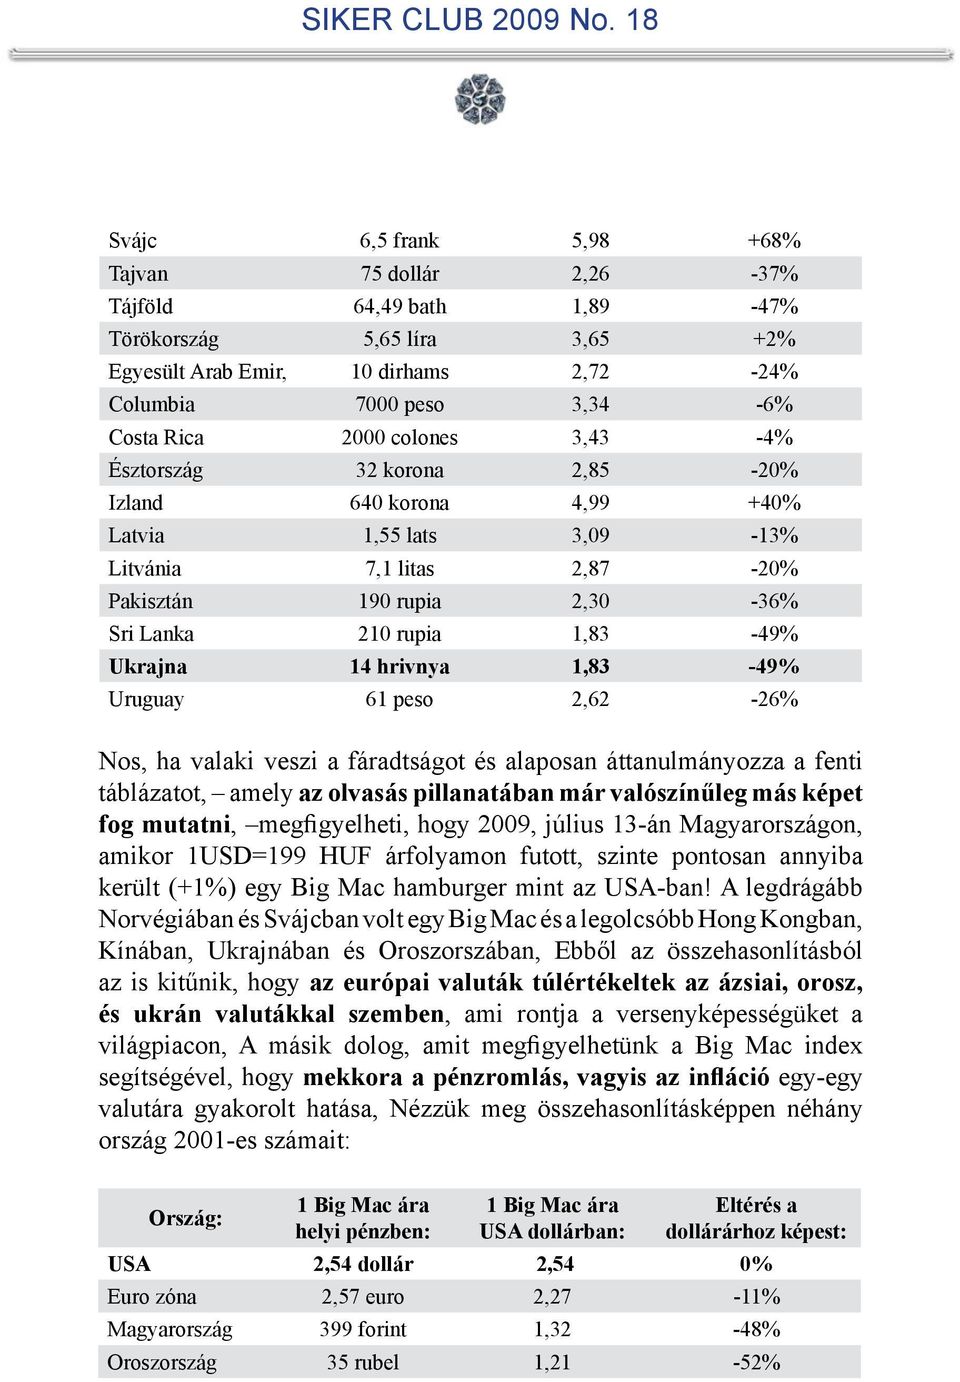 hrivnya 1,83-49% Uruguay 61 peso 2,62-26% Nos, ha valaki veszi a fáradtságot és alaposan áttanulmányozza a fenti táblázatot, amely az olvasás pillanatában már valószínűleg más képet fog mutatni,